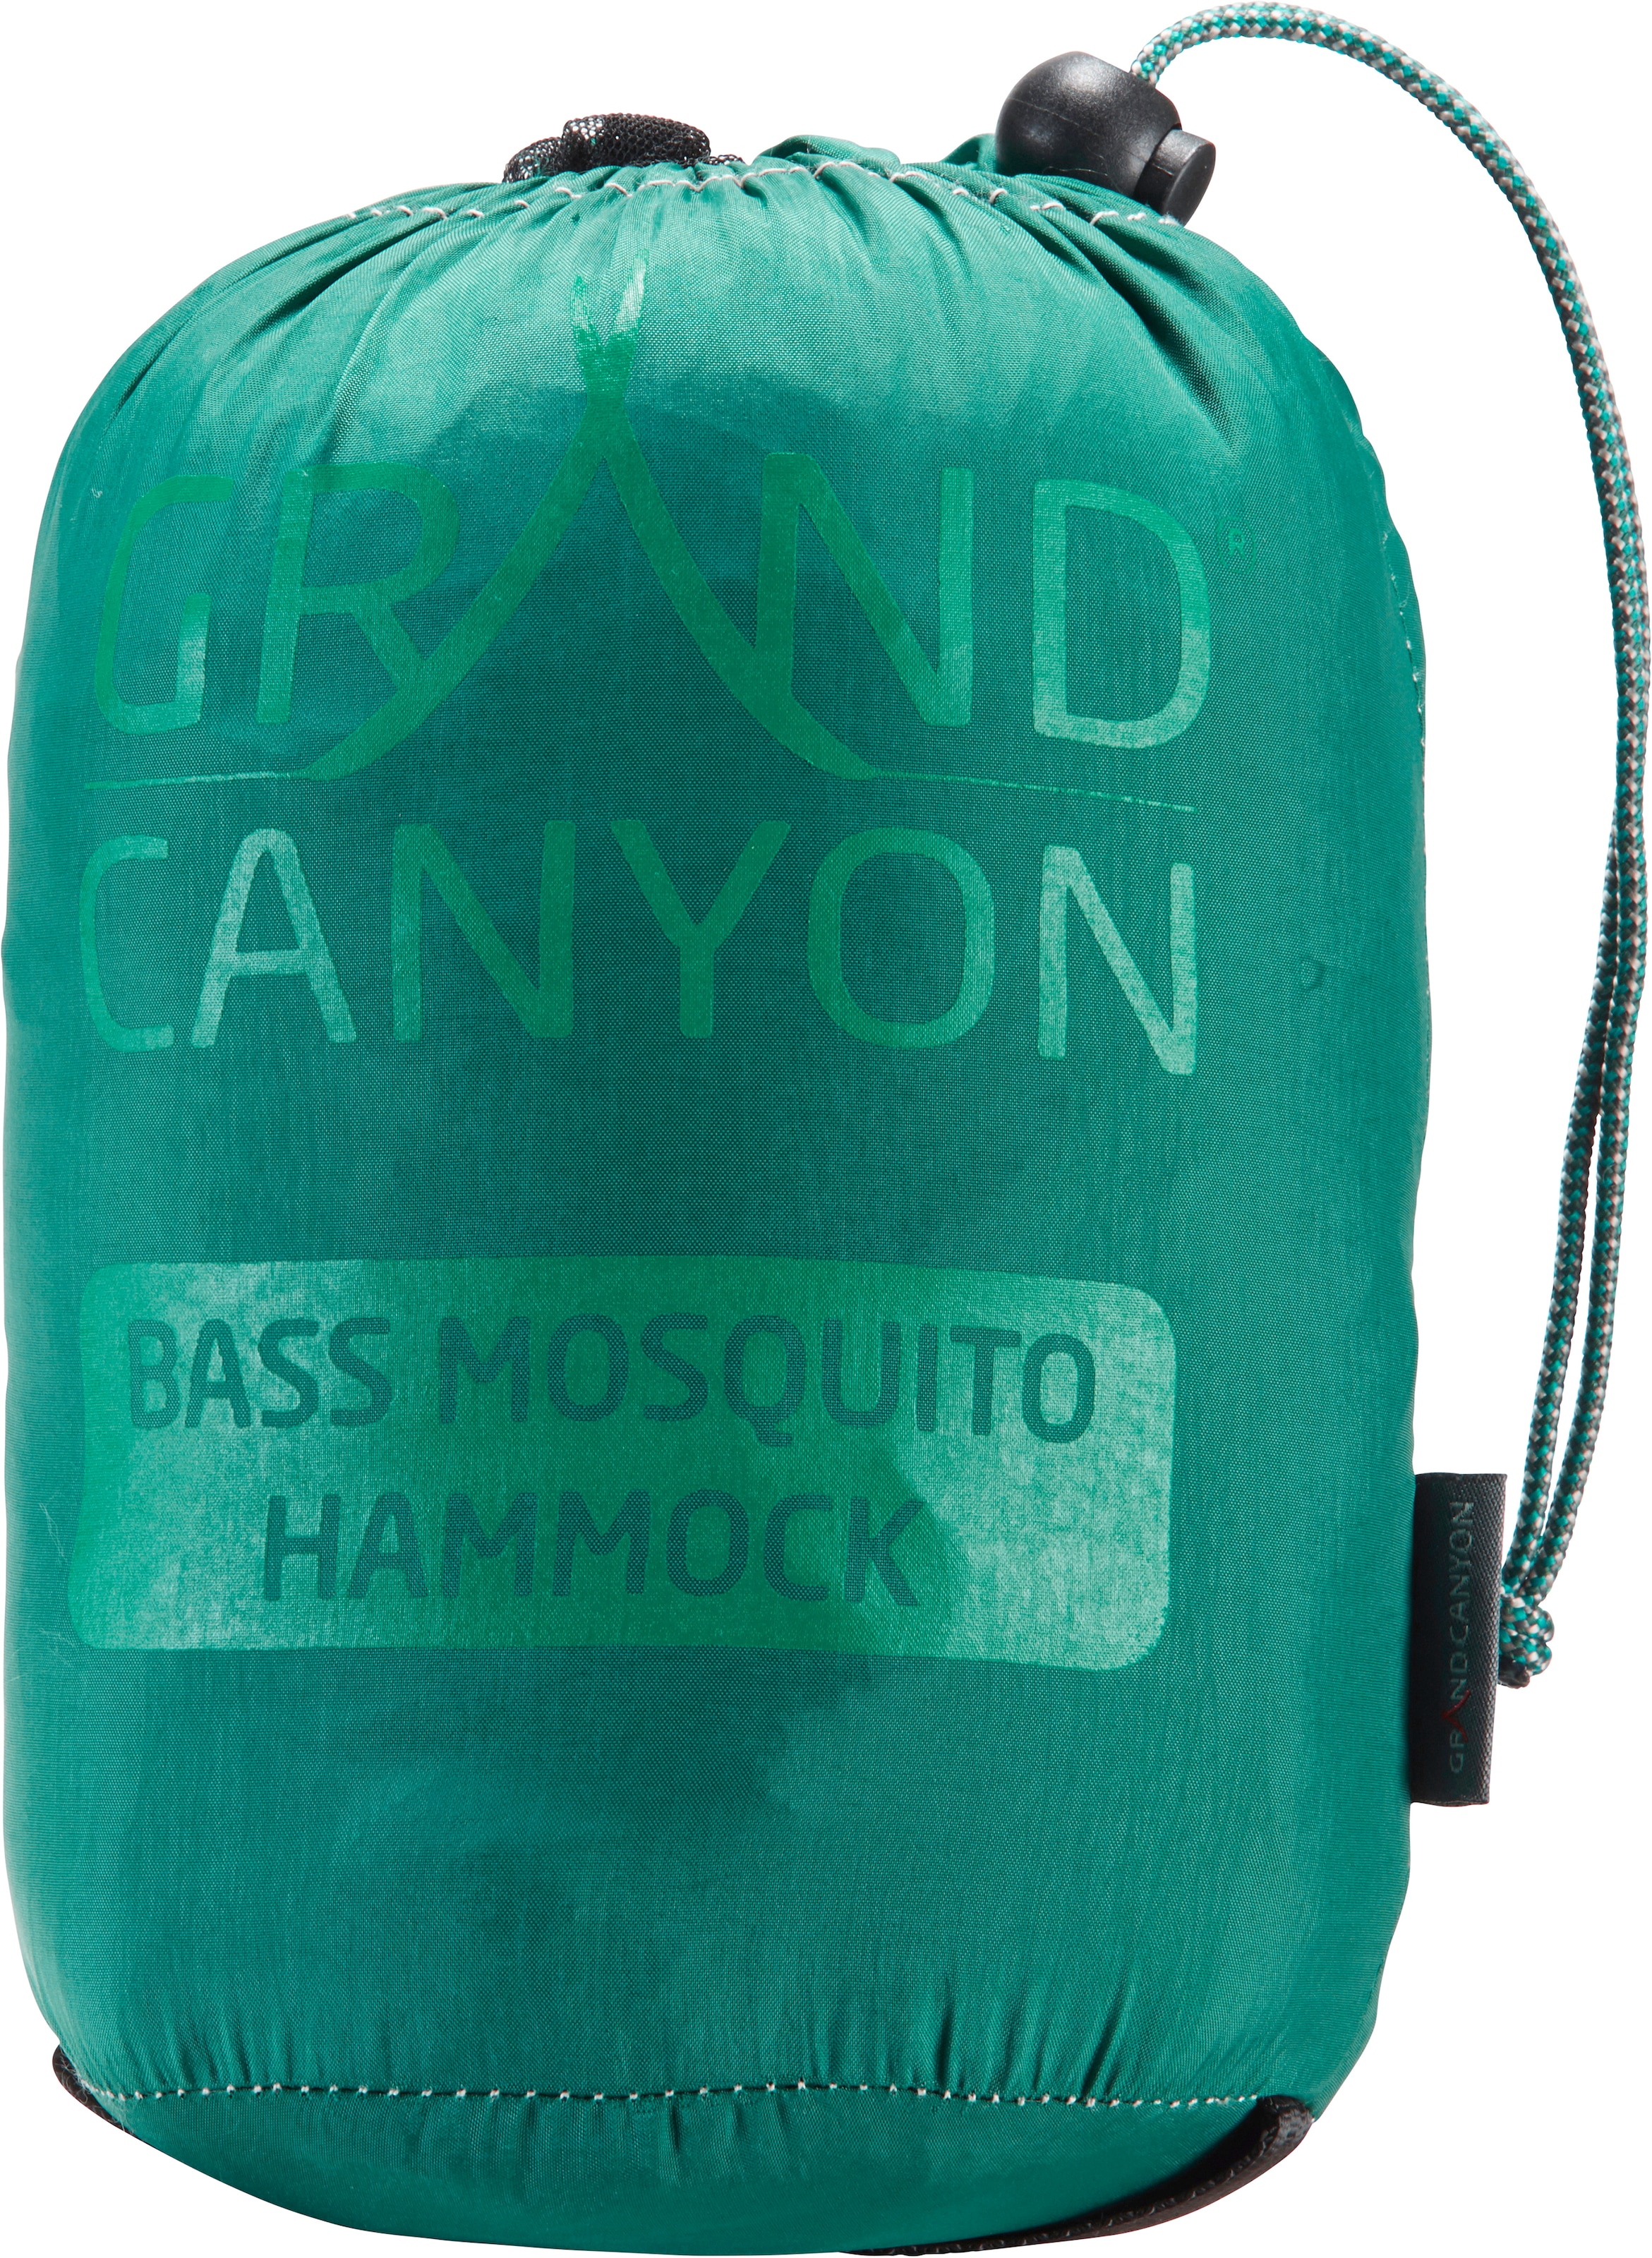 GRAND CANYON Hängematte »Bass Mosquito Hammock Storm«